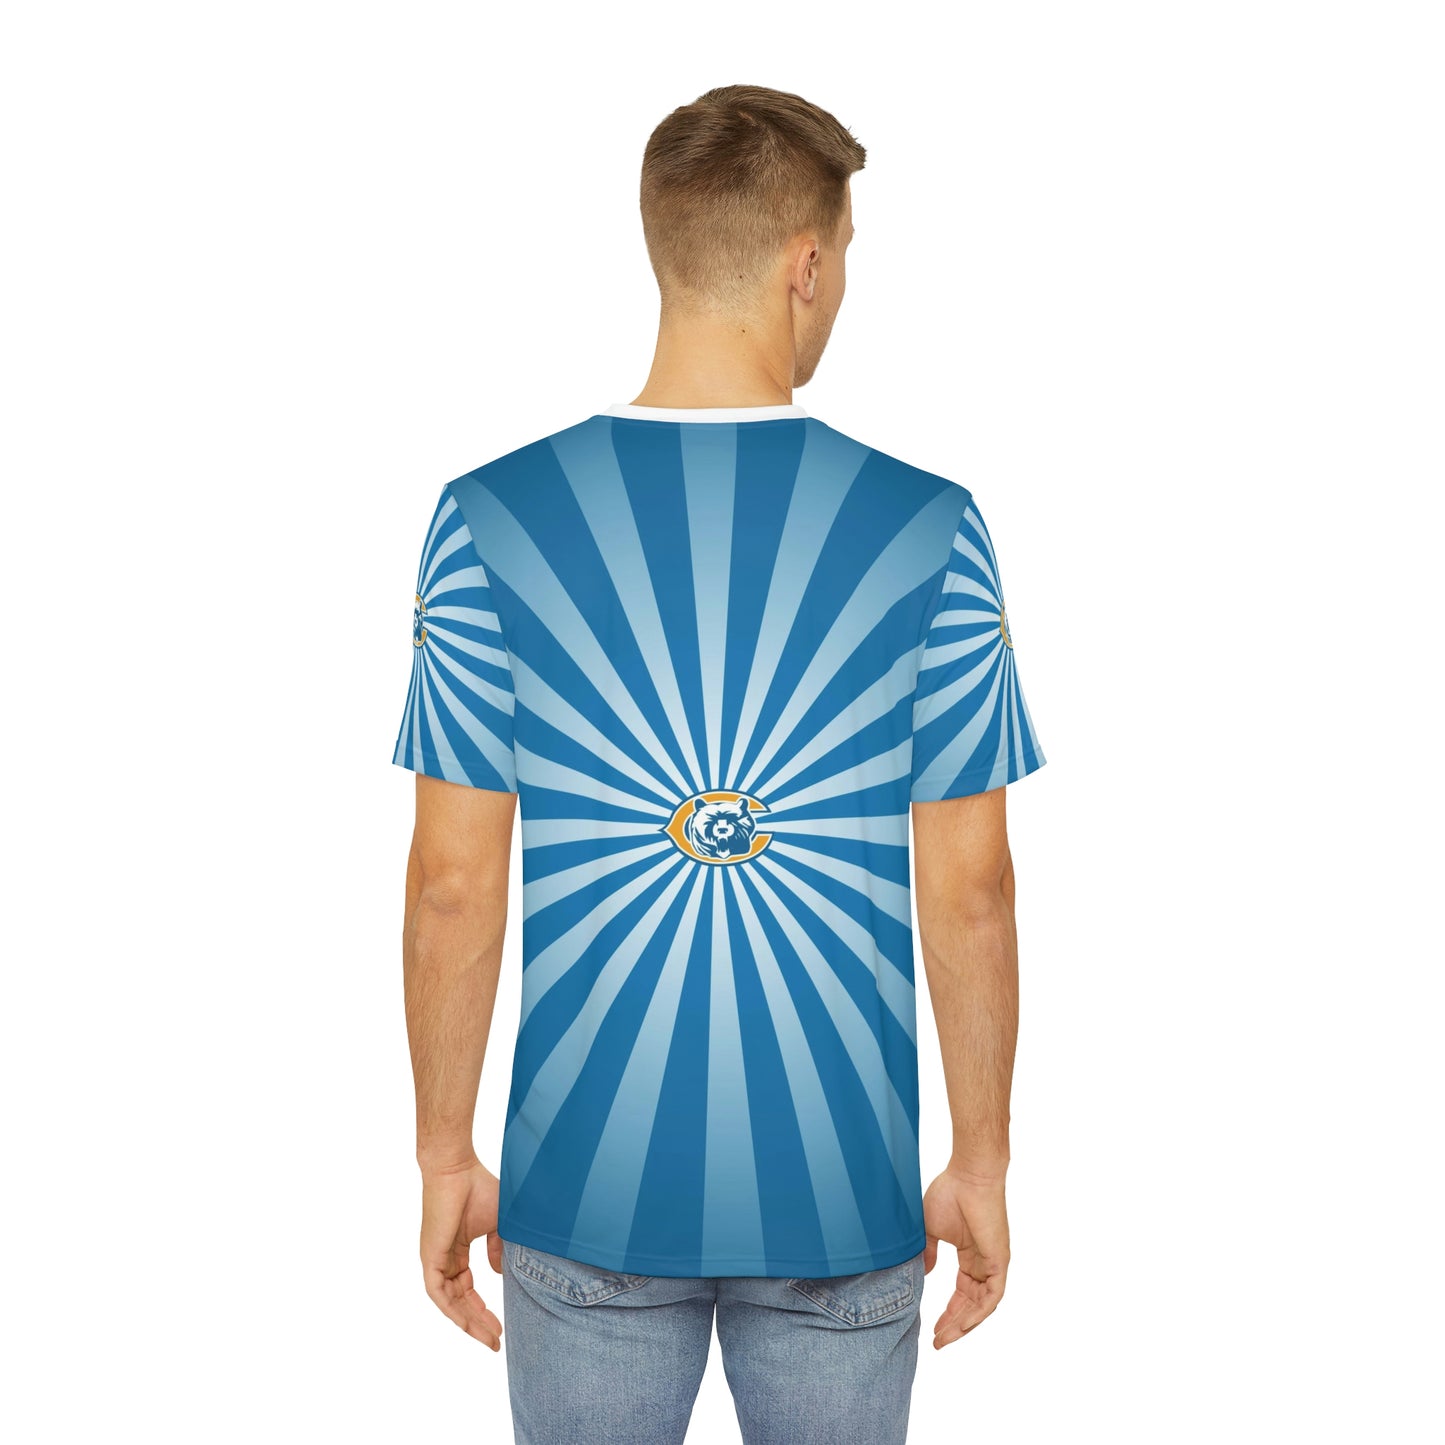 Geotrott NFL Detroit Lions Men's Polyester All Over Print Tee T-Shirt